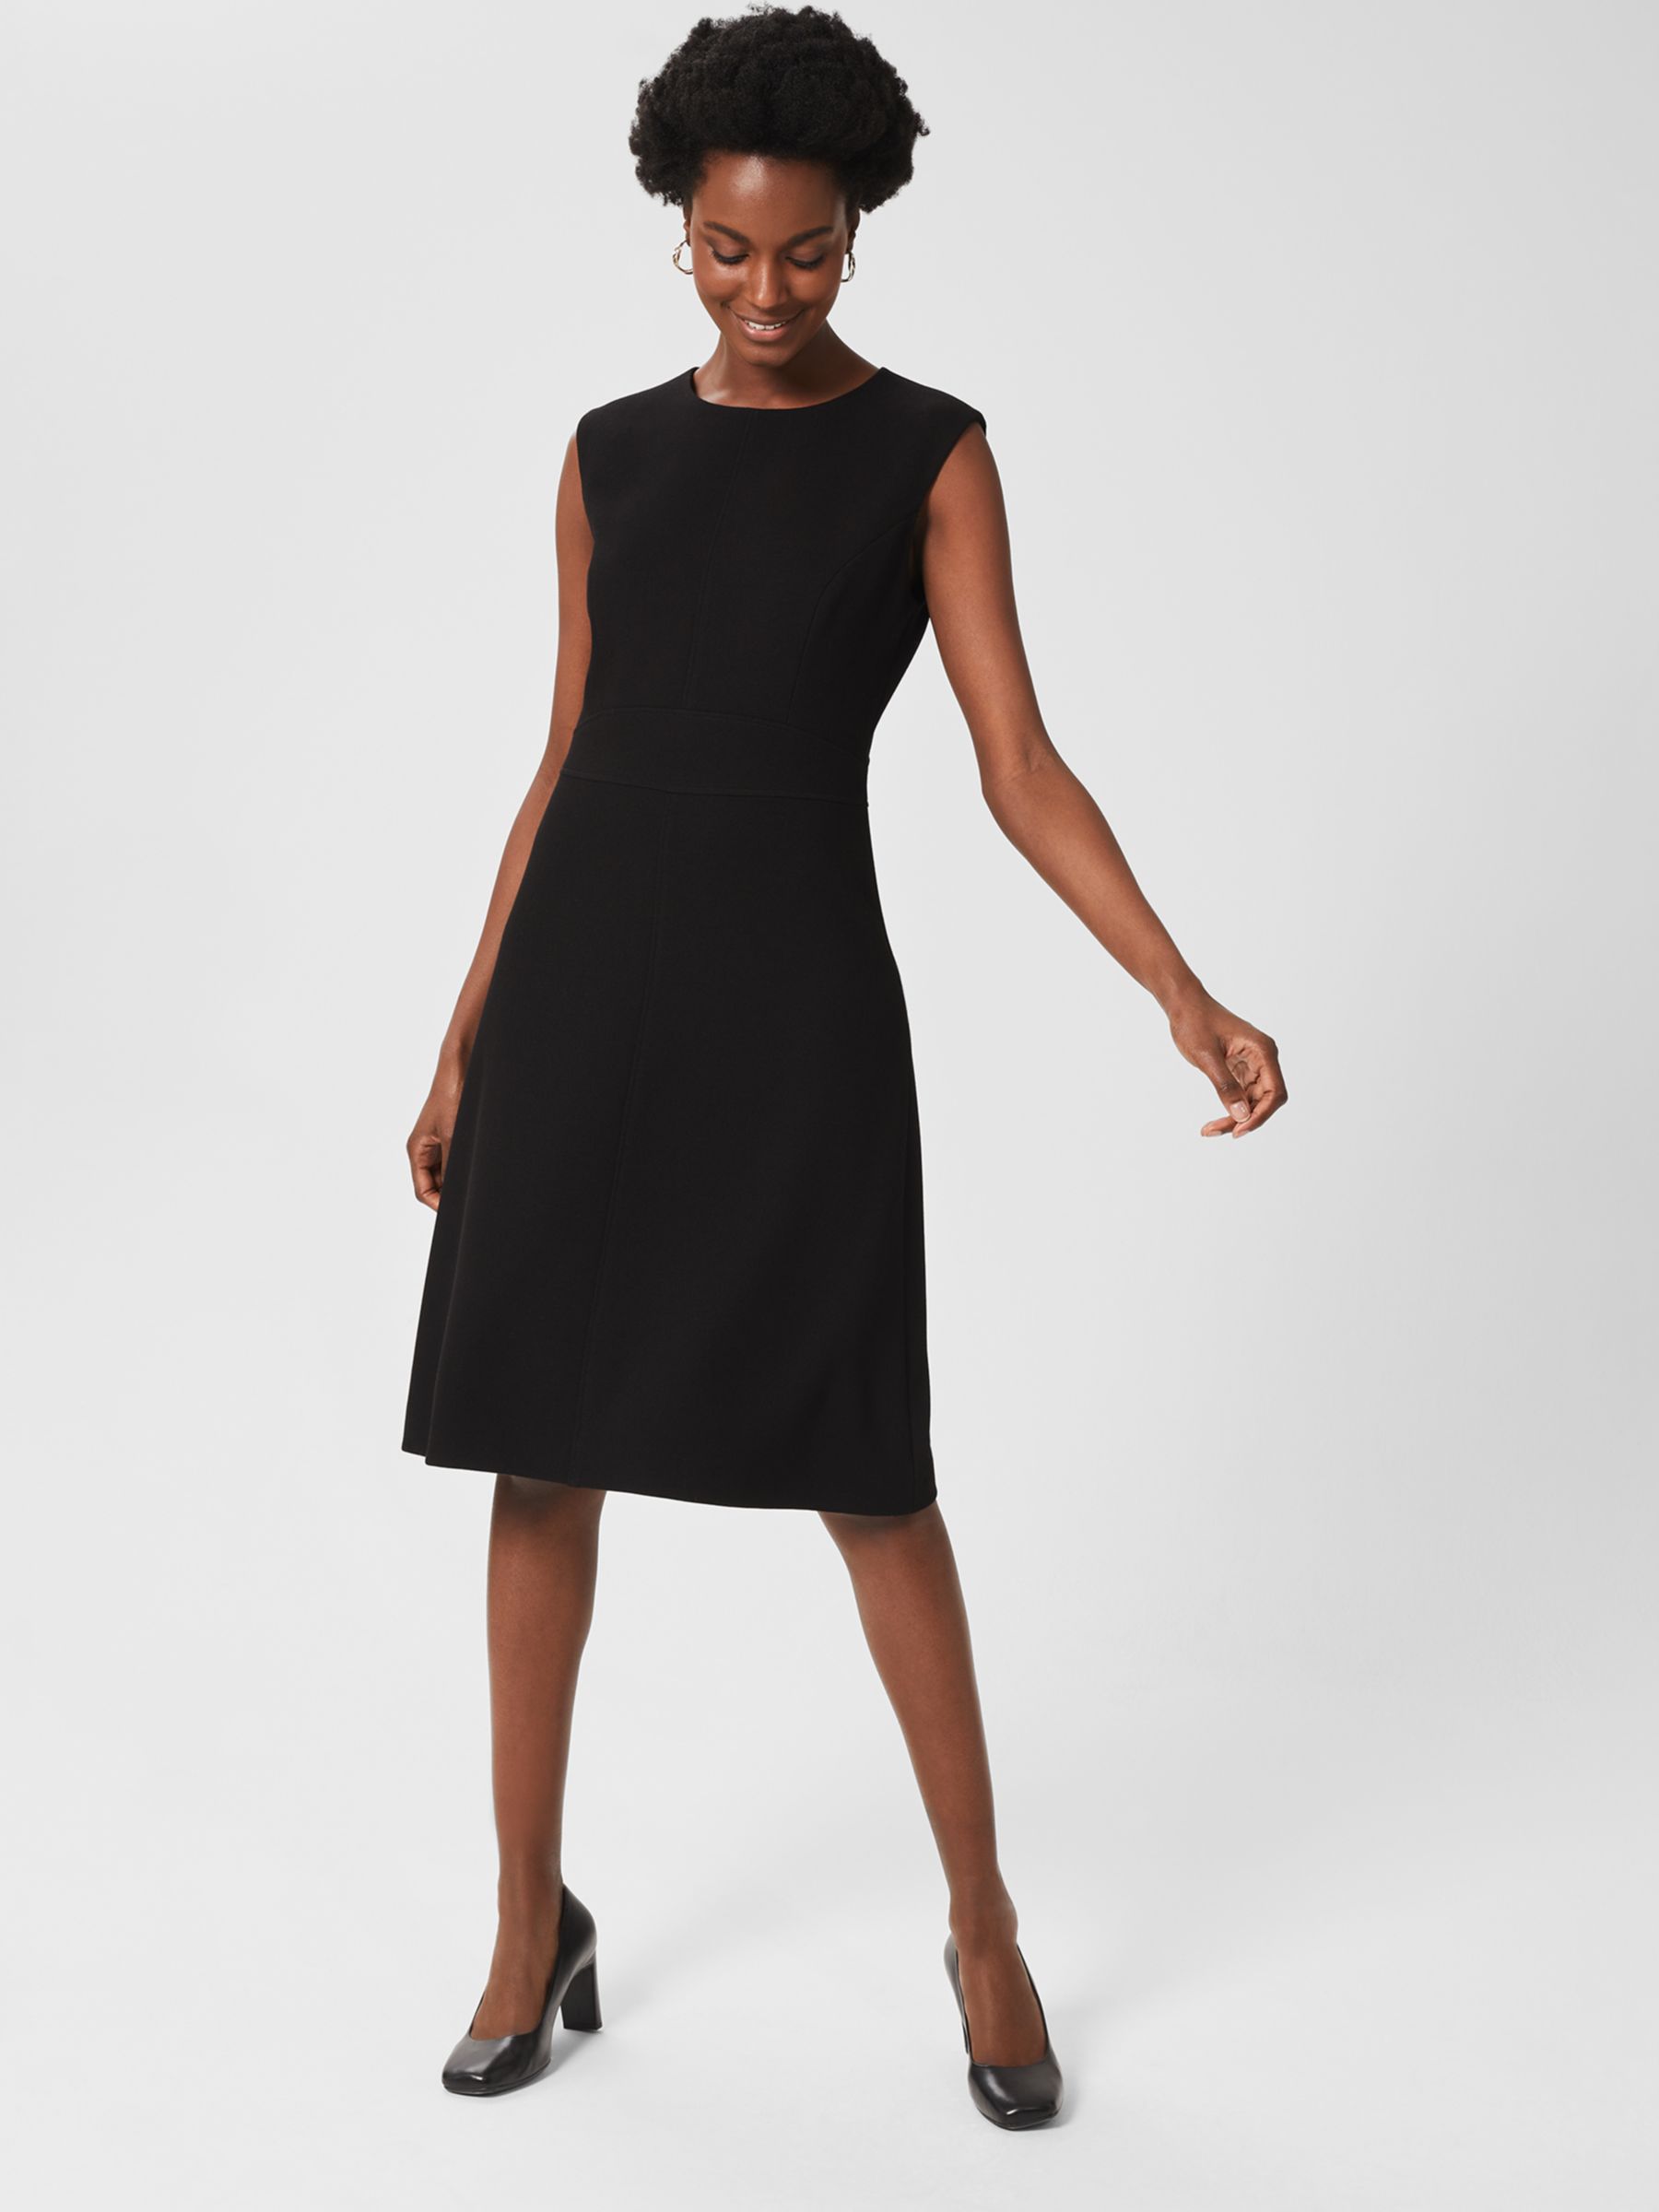 Hobbs Ophelia A-Line Dress, Black, 6